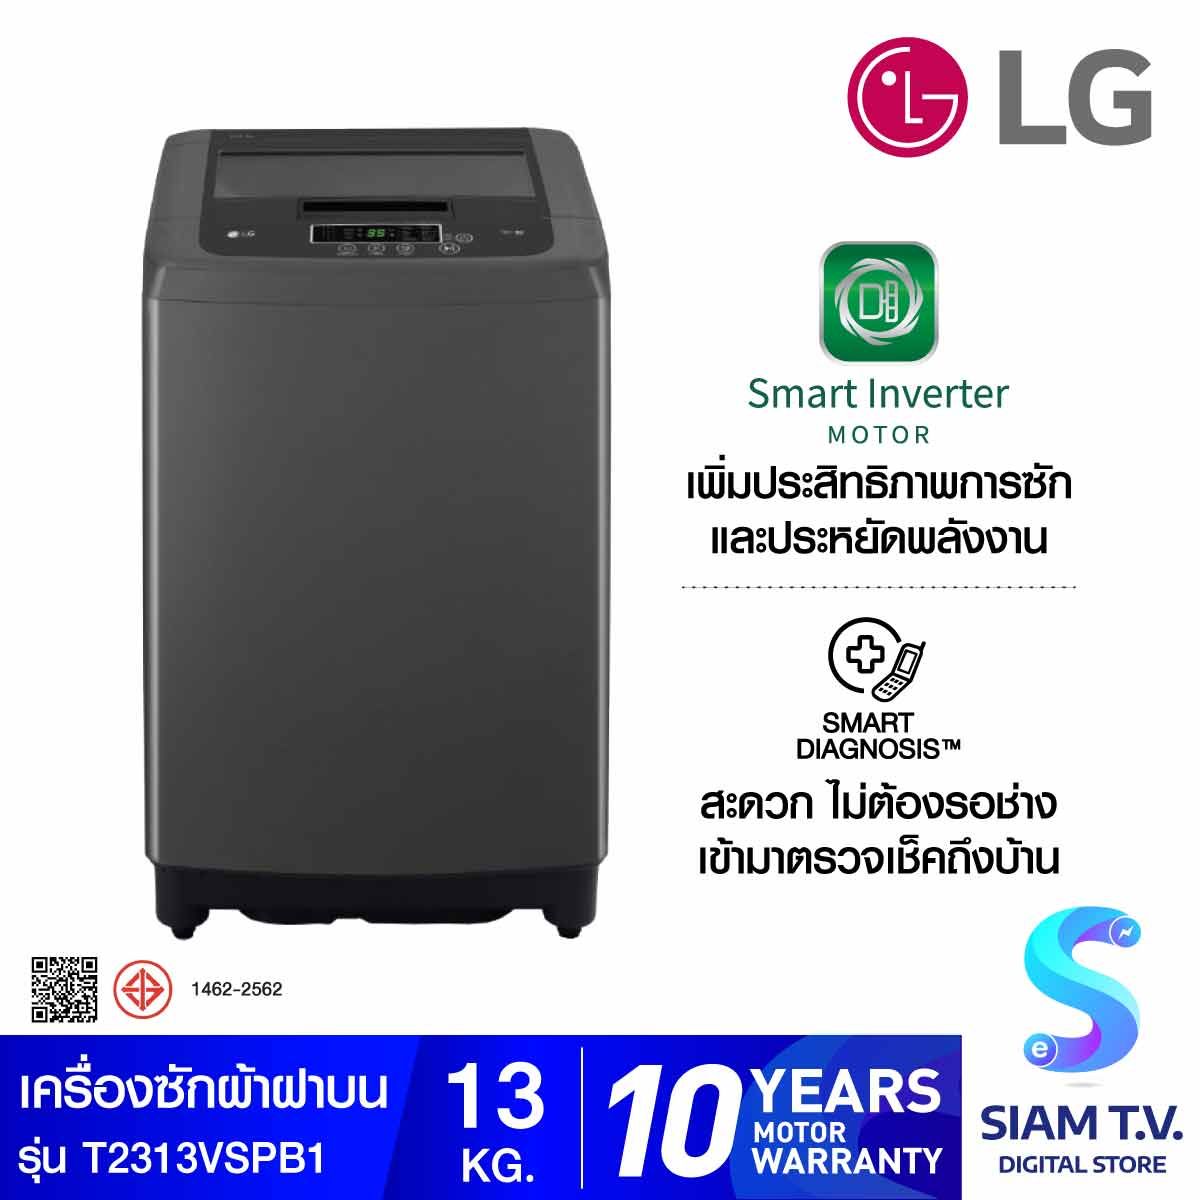 LG เครื่องซักผ้าฝาบน ระบบ Smart Inverter ความจุซัก 13 กก. รุ่น T2313VSPB1 สีดำ